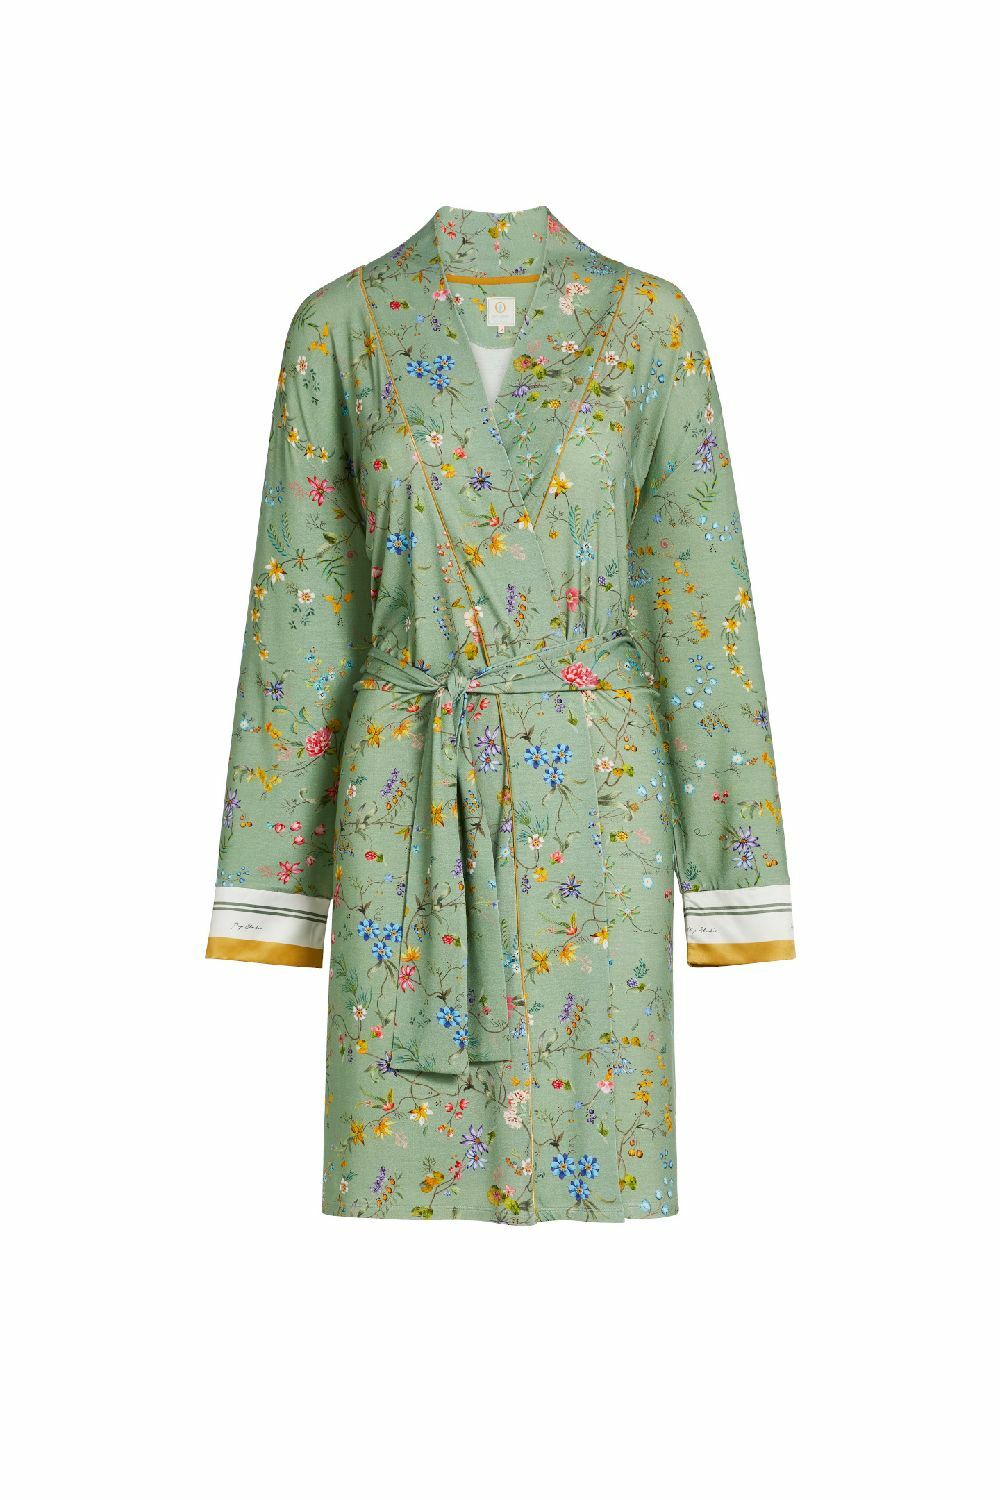 Actie Geweldig Ashley Furman Pip Studio Nisha Petites Fleurs Kimono Green online bestellen